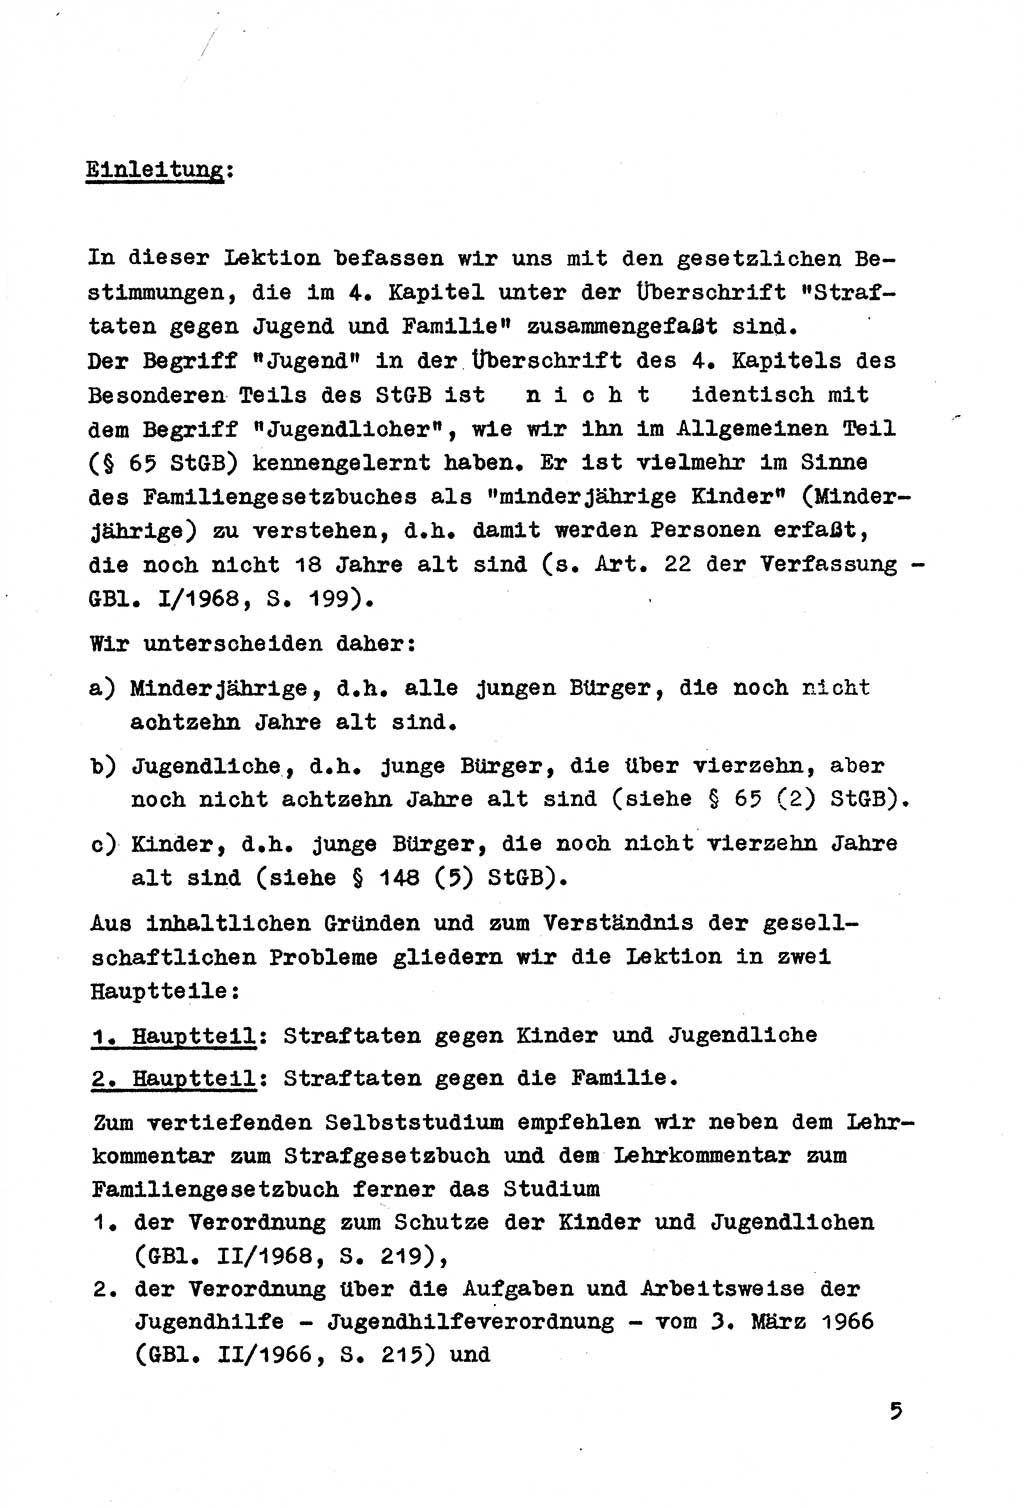 Strafrecht der DDR (Deutsche Demokratische Republik), Besonderer Teil, Lehrmaterial, Heft 4 1969, Seite 5 (Strafr. DDR BT Lehrmat. H. 4 1969, S. 5)